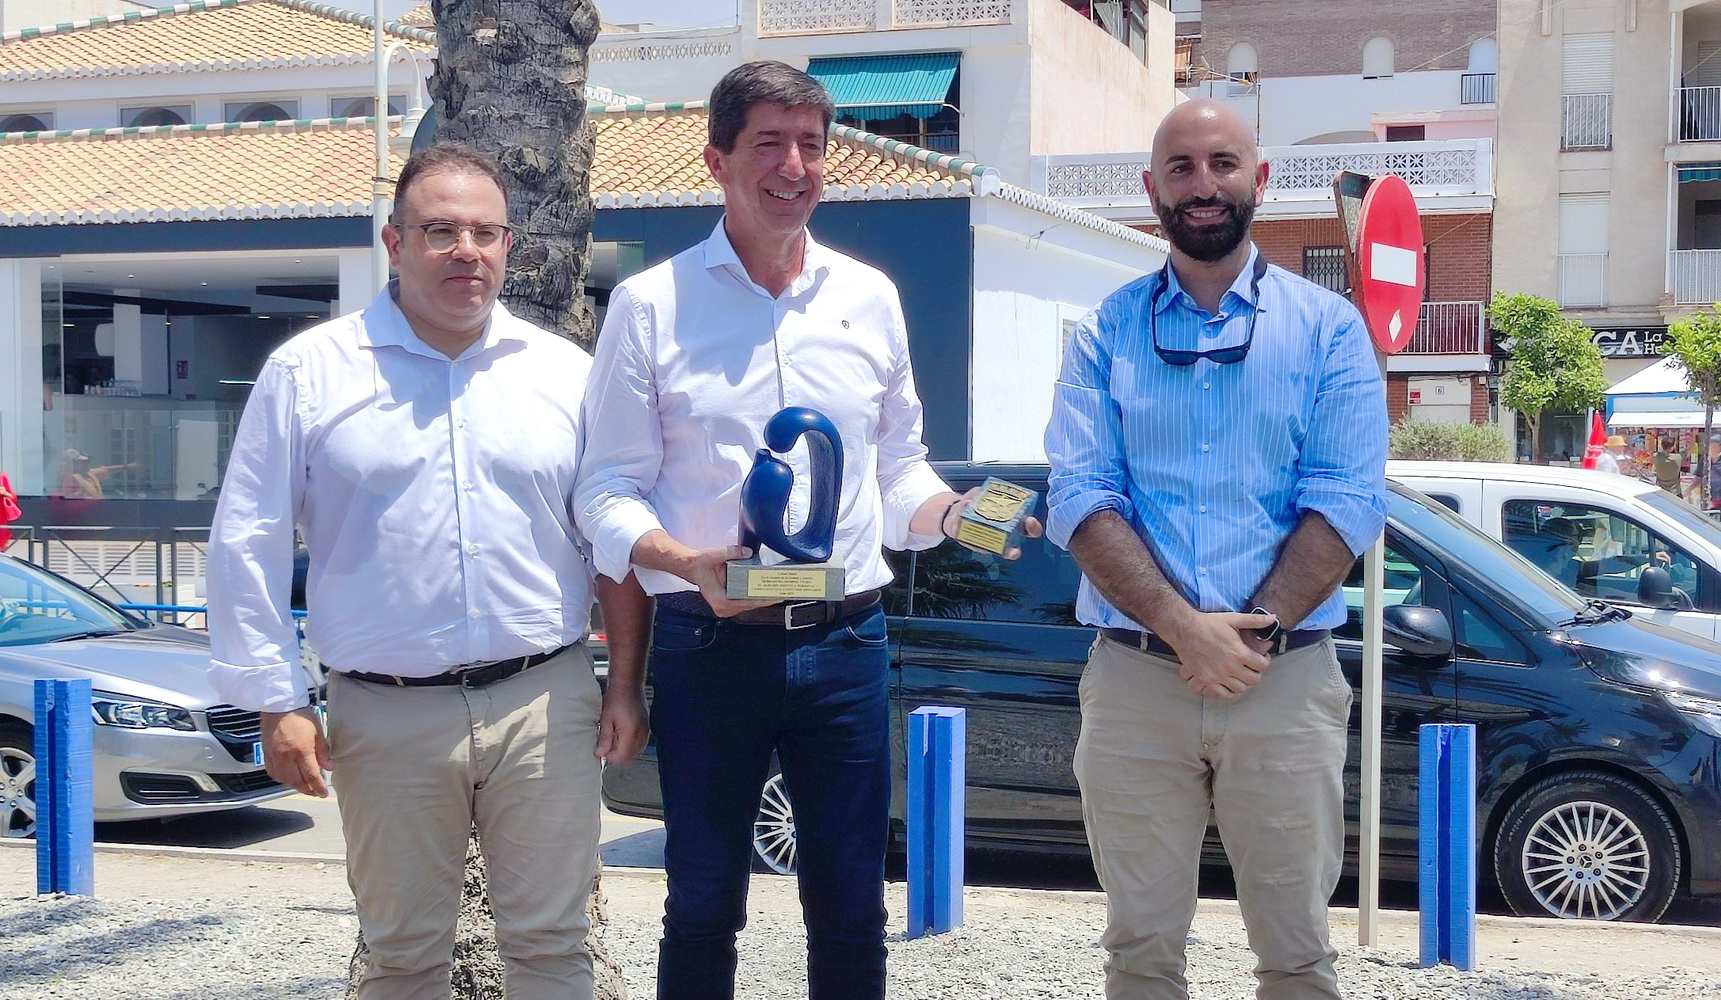 El an vicepresidente de la Junta de Andaluca, Juan Marn, ha recibido el apoyo de Almucar y La Herradura-